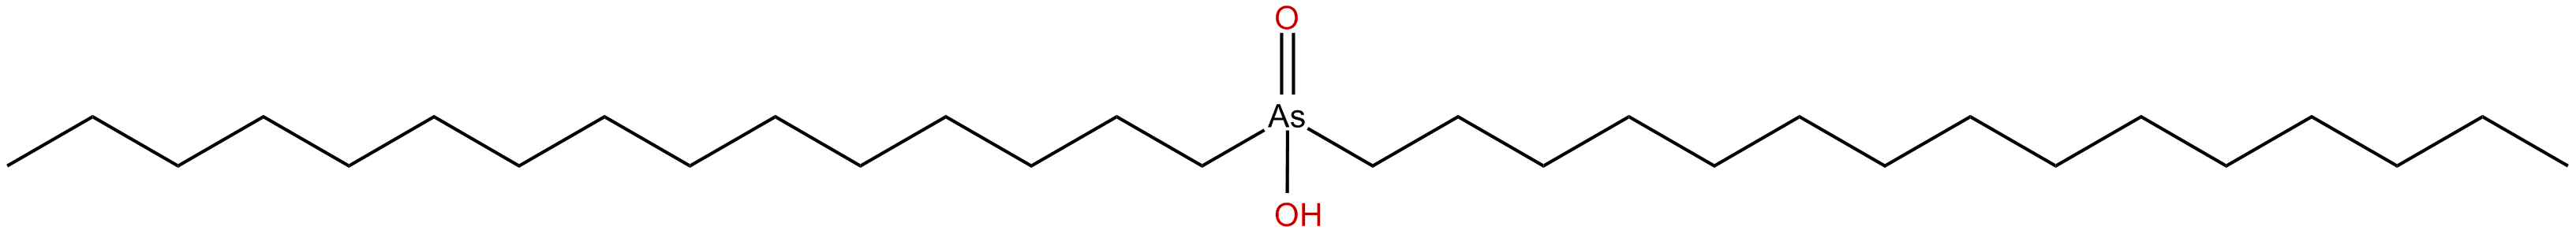 Image of hydroxydipentadecyl arsine oxide